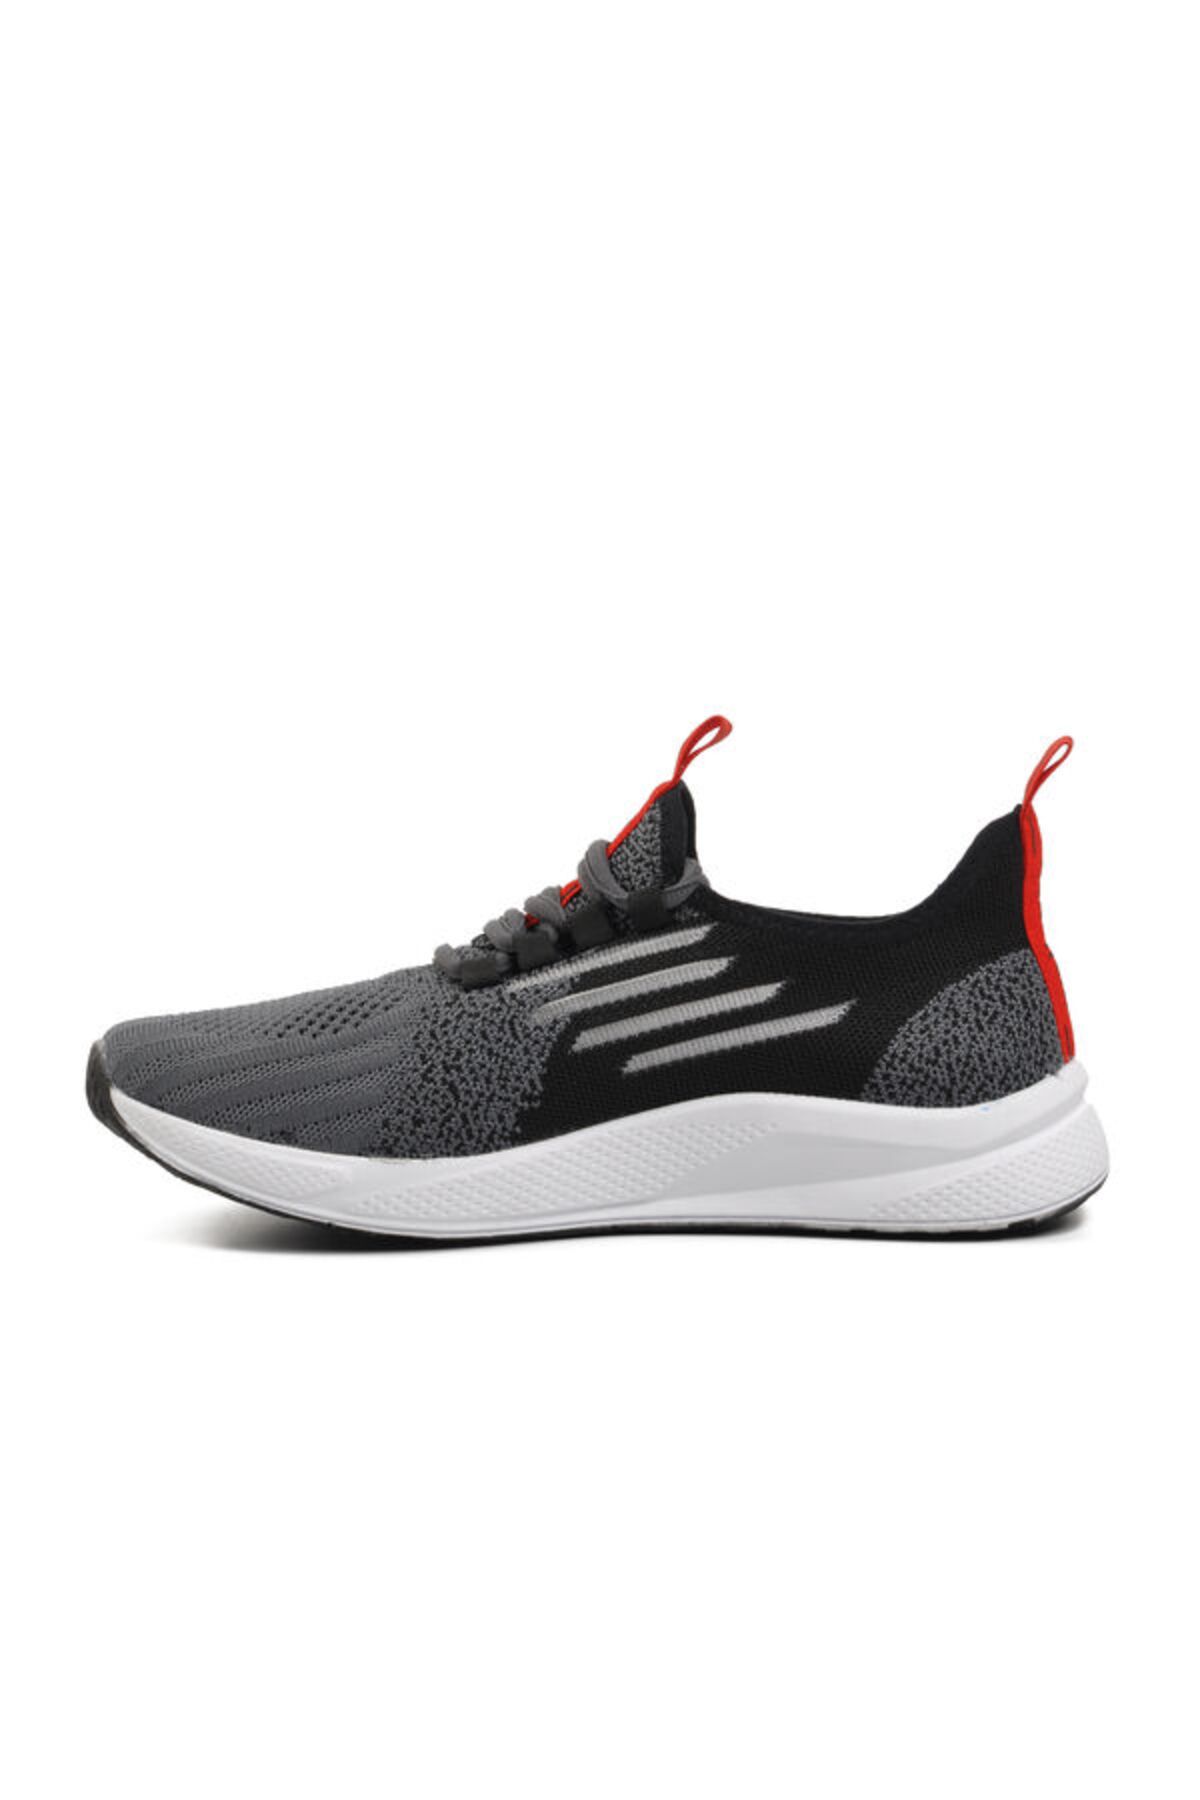 WALKWAY Füme Siyah Kırmızı Hava Alan Hafif Spor Ayakkabı